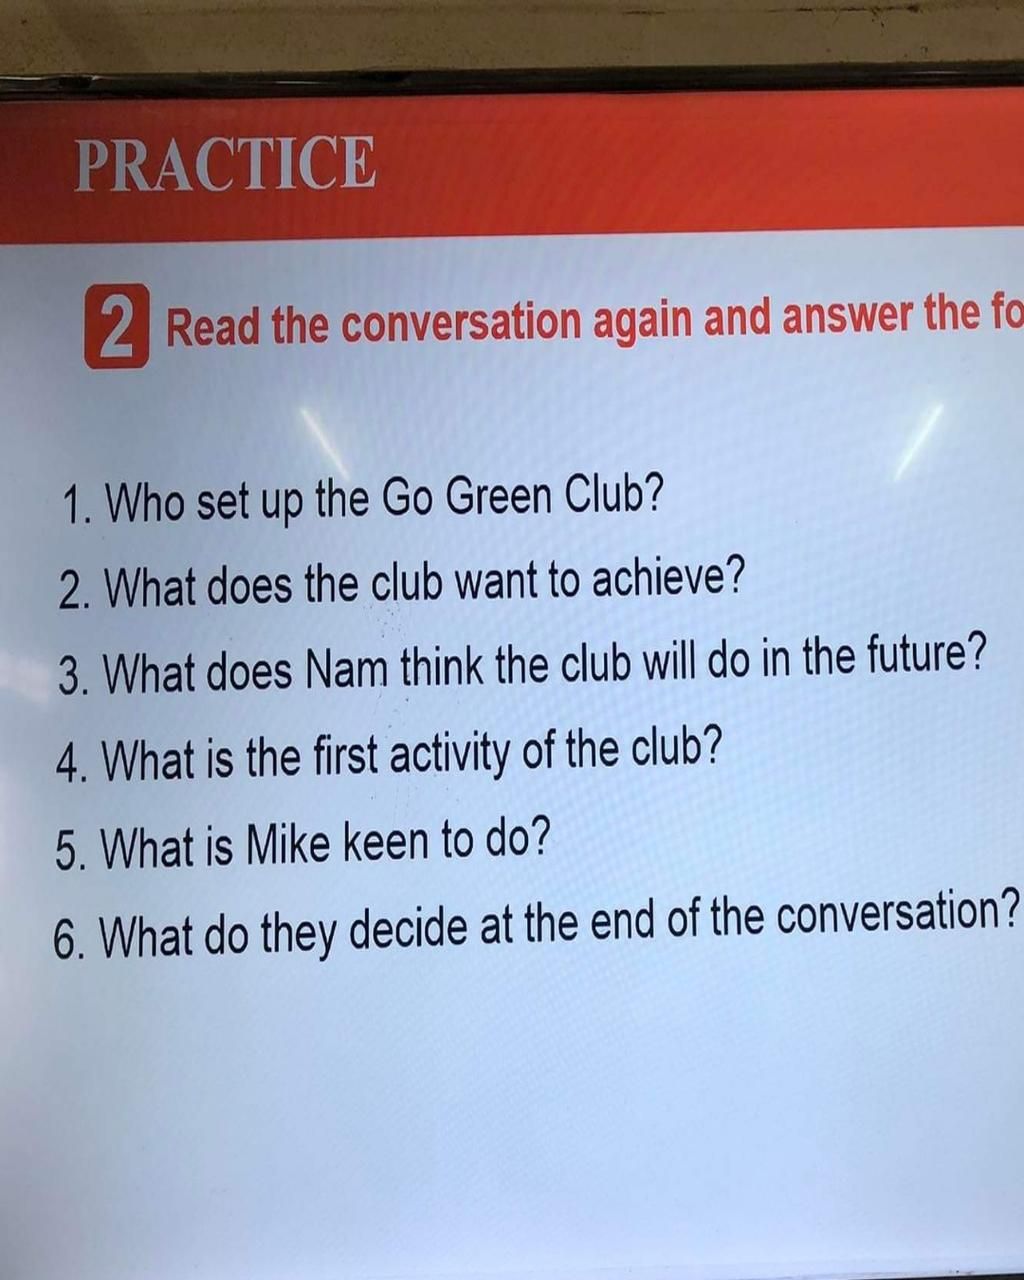 Đọc và trả lời các câu hỏi trong ảnh ạ: Bài 1: Go Green Club (Câu lạc bộ  sống xanh) Mike: What are you going to